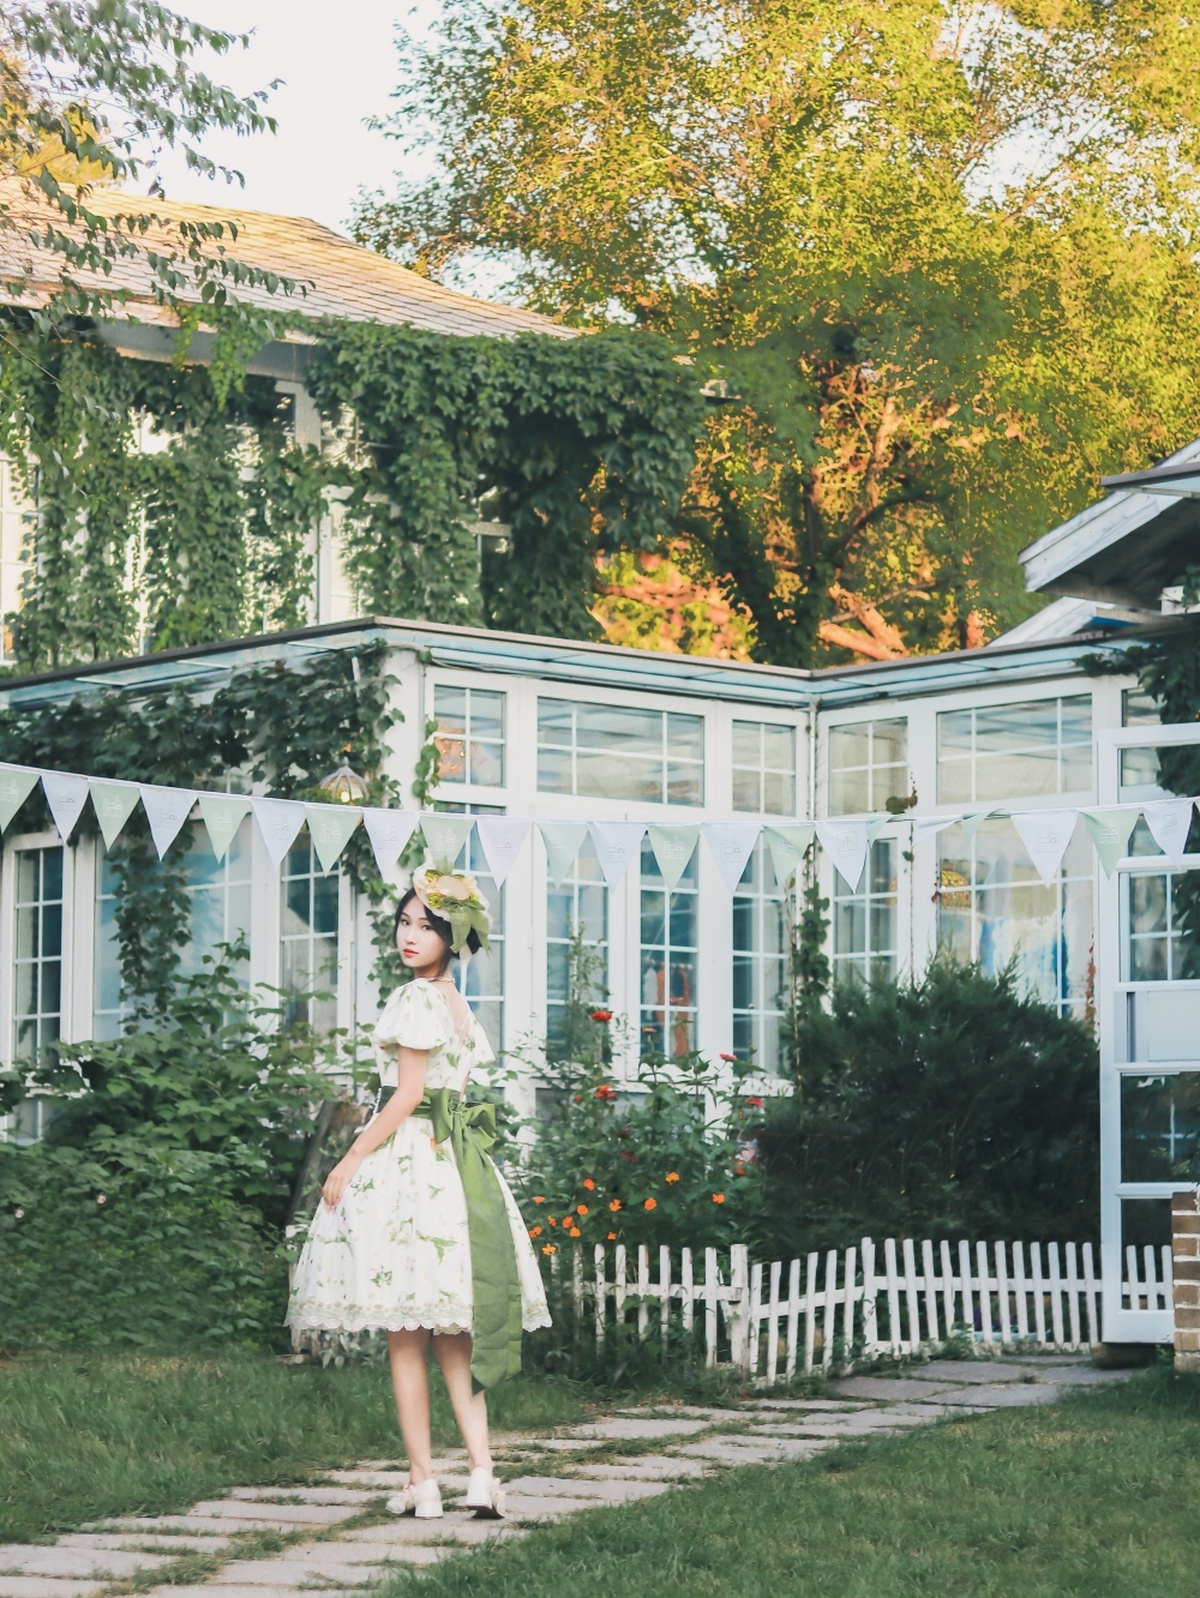 一个穿着绿色连衣裙的年轻女子穿过一个背景是白色房子的花园